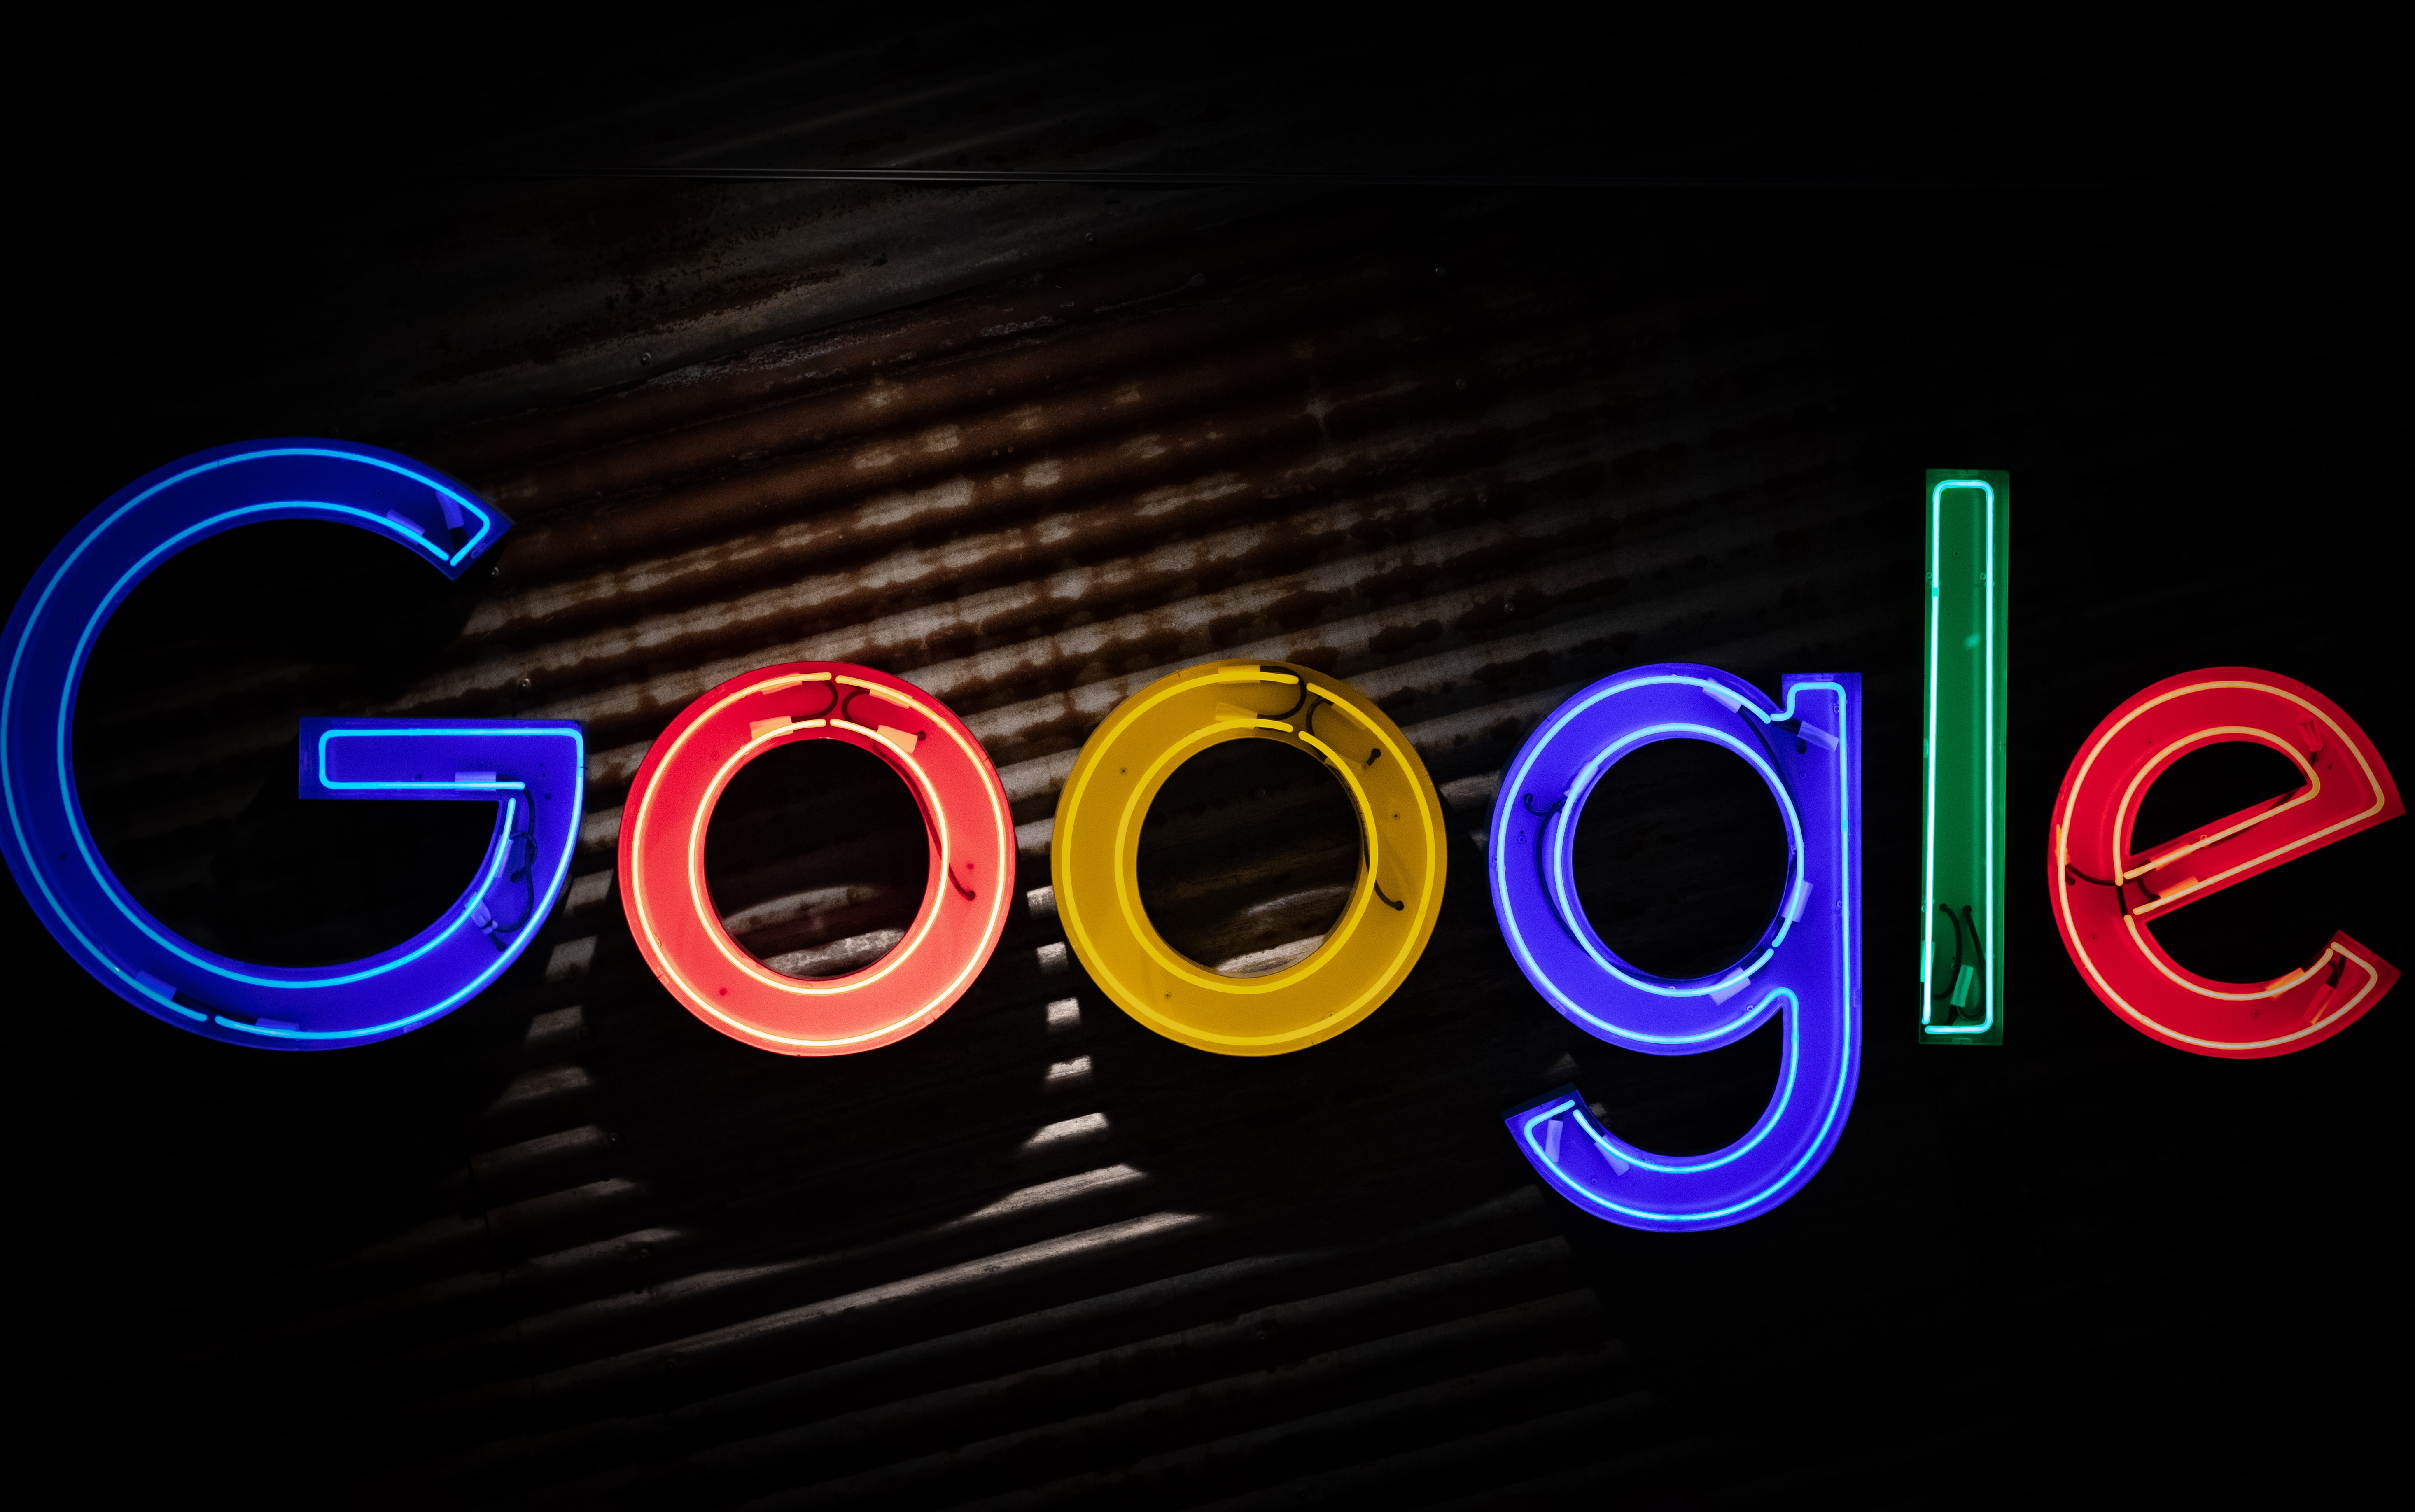 Google'ın İsrail'le yapay zeka anlaşmasına tepki gösteren Yahudi çalışanı istifa etti